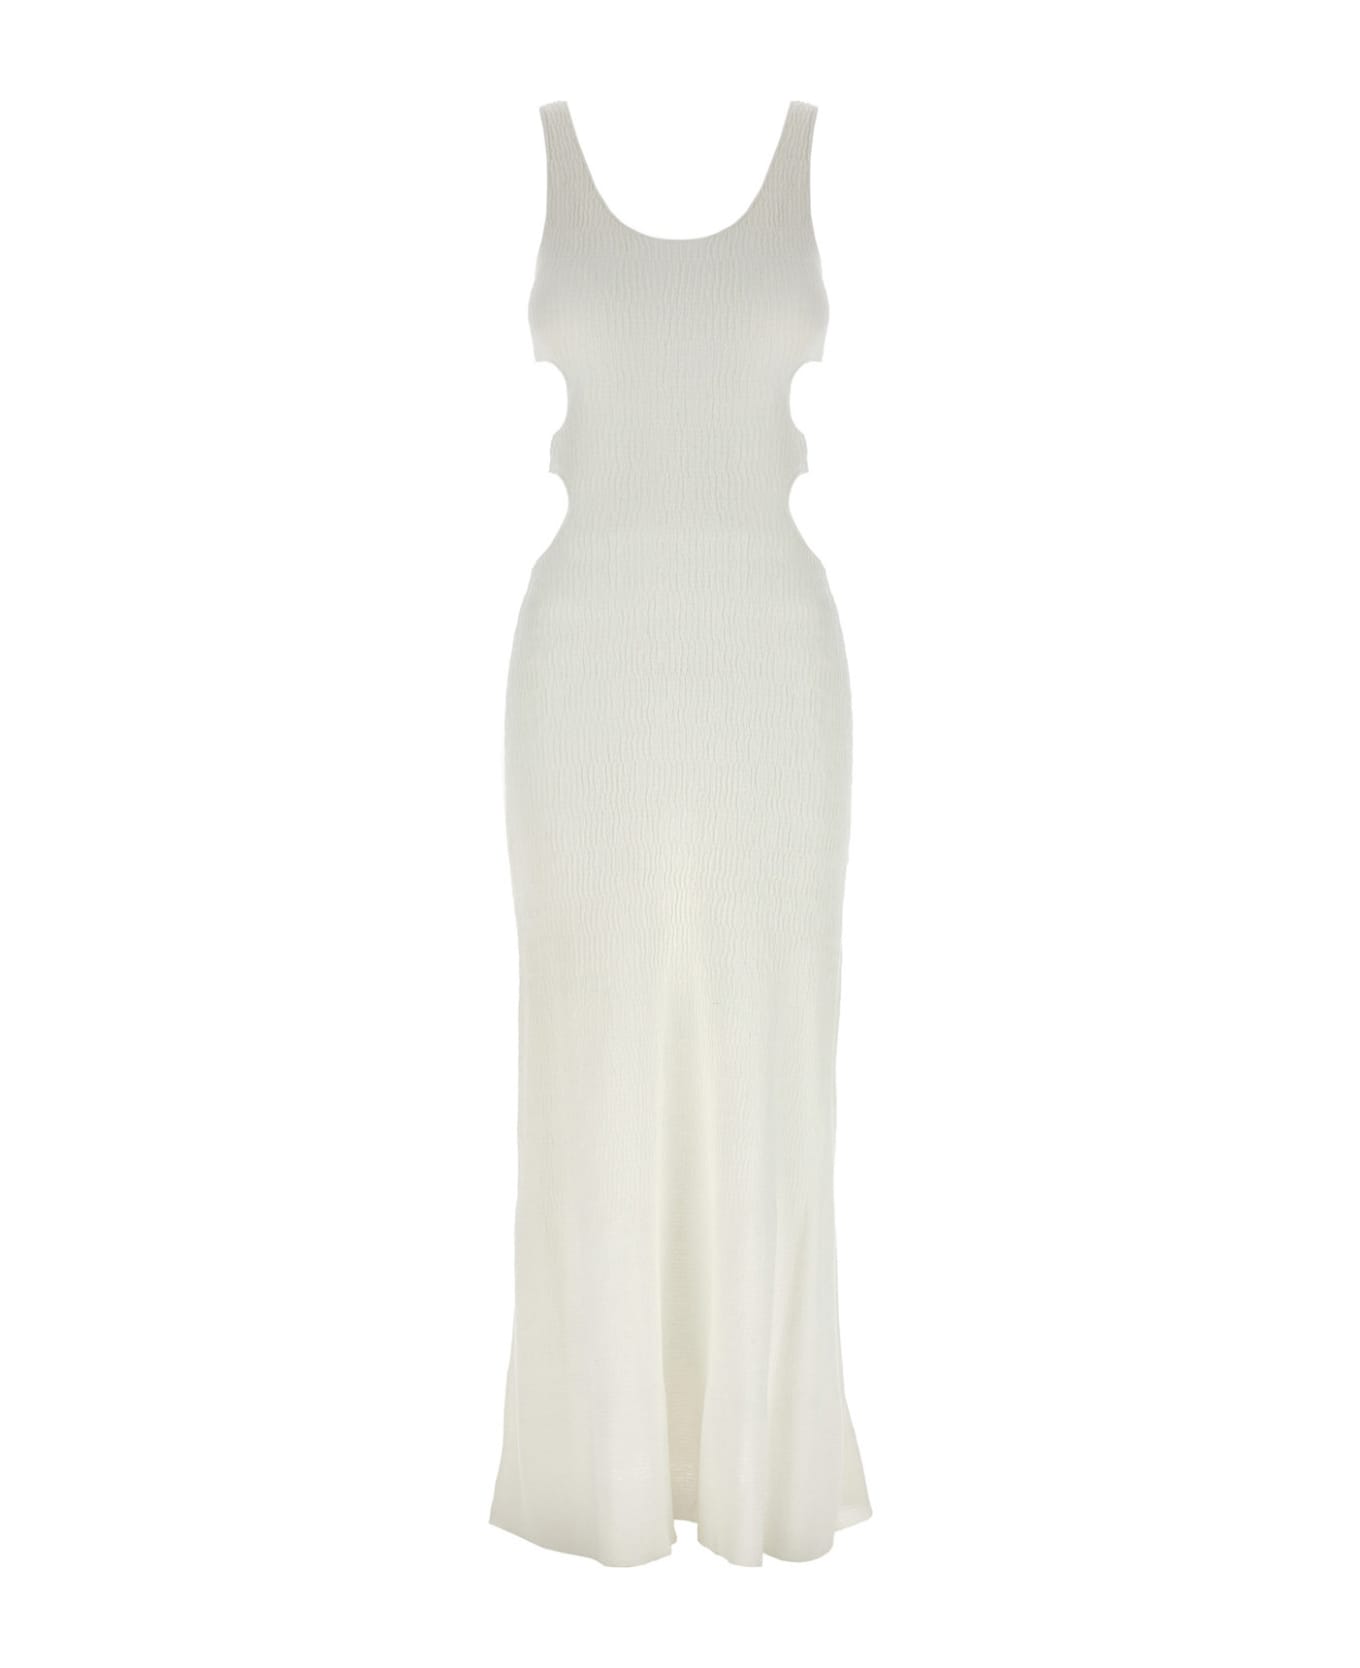 Chloé Cut-out Dress - White